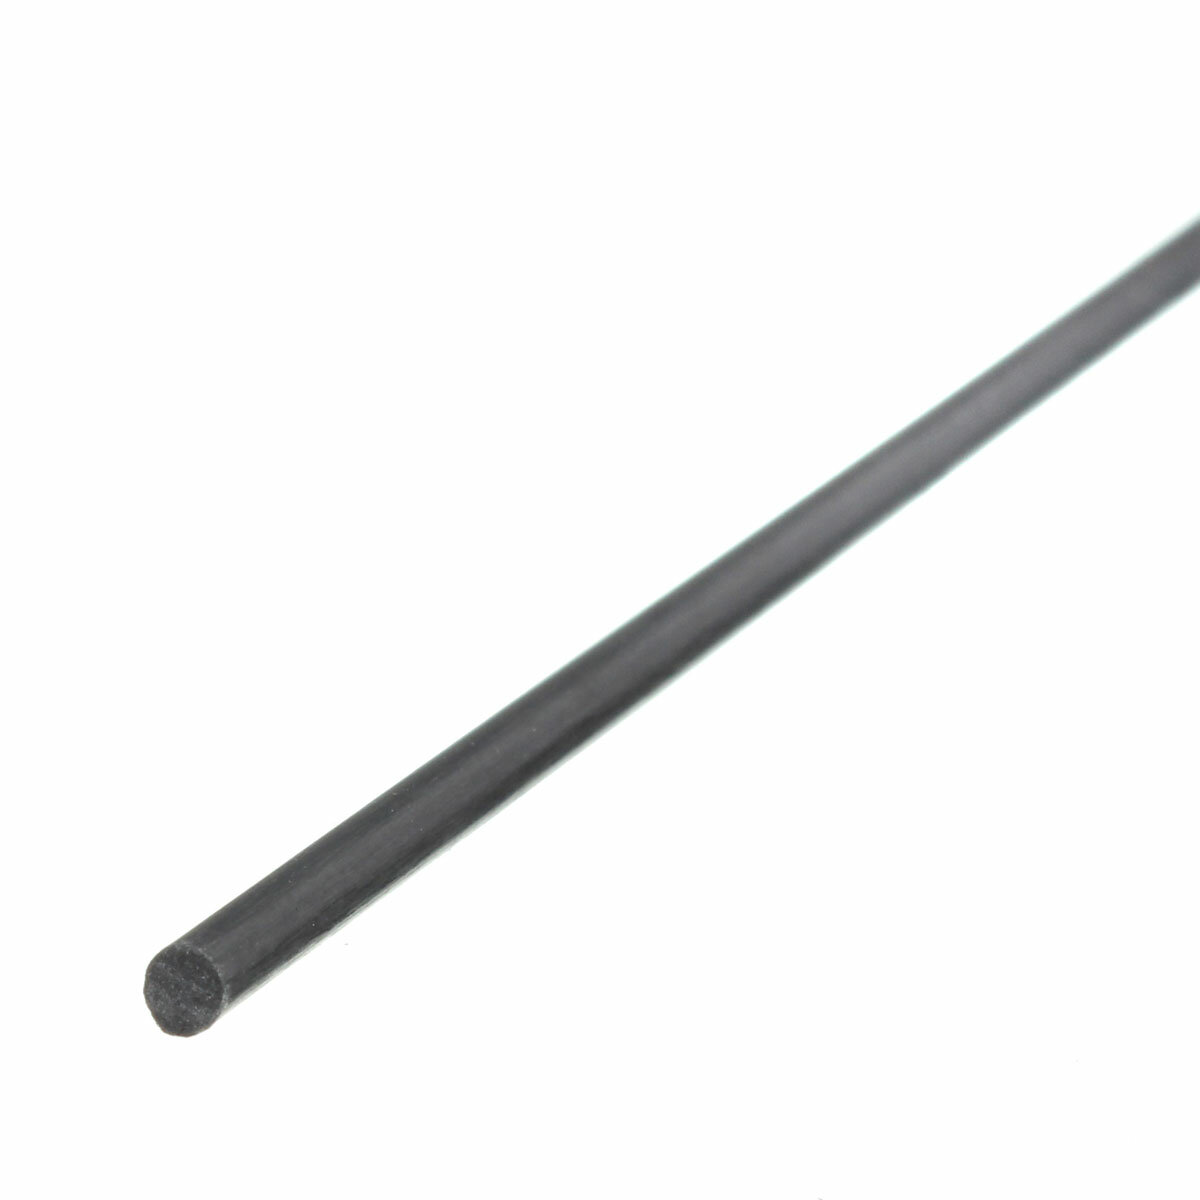 

5pcs 2mm Diameter x 500mm Carbon Fiber Rods Tube For RC Airplane Matte Pole